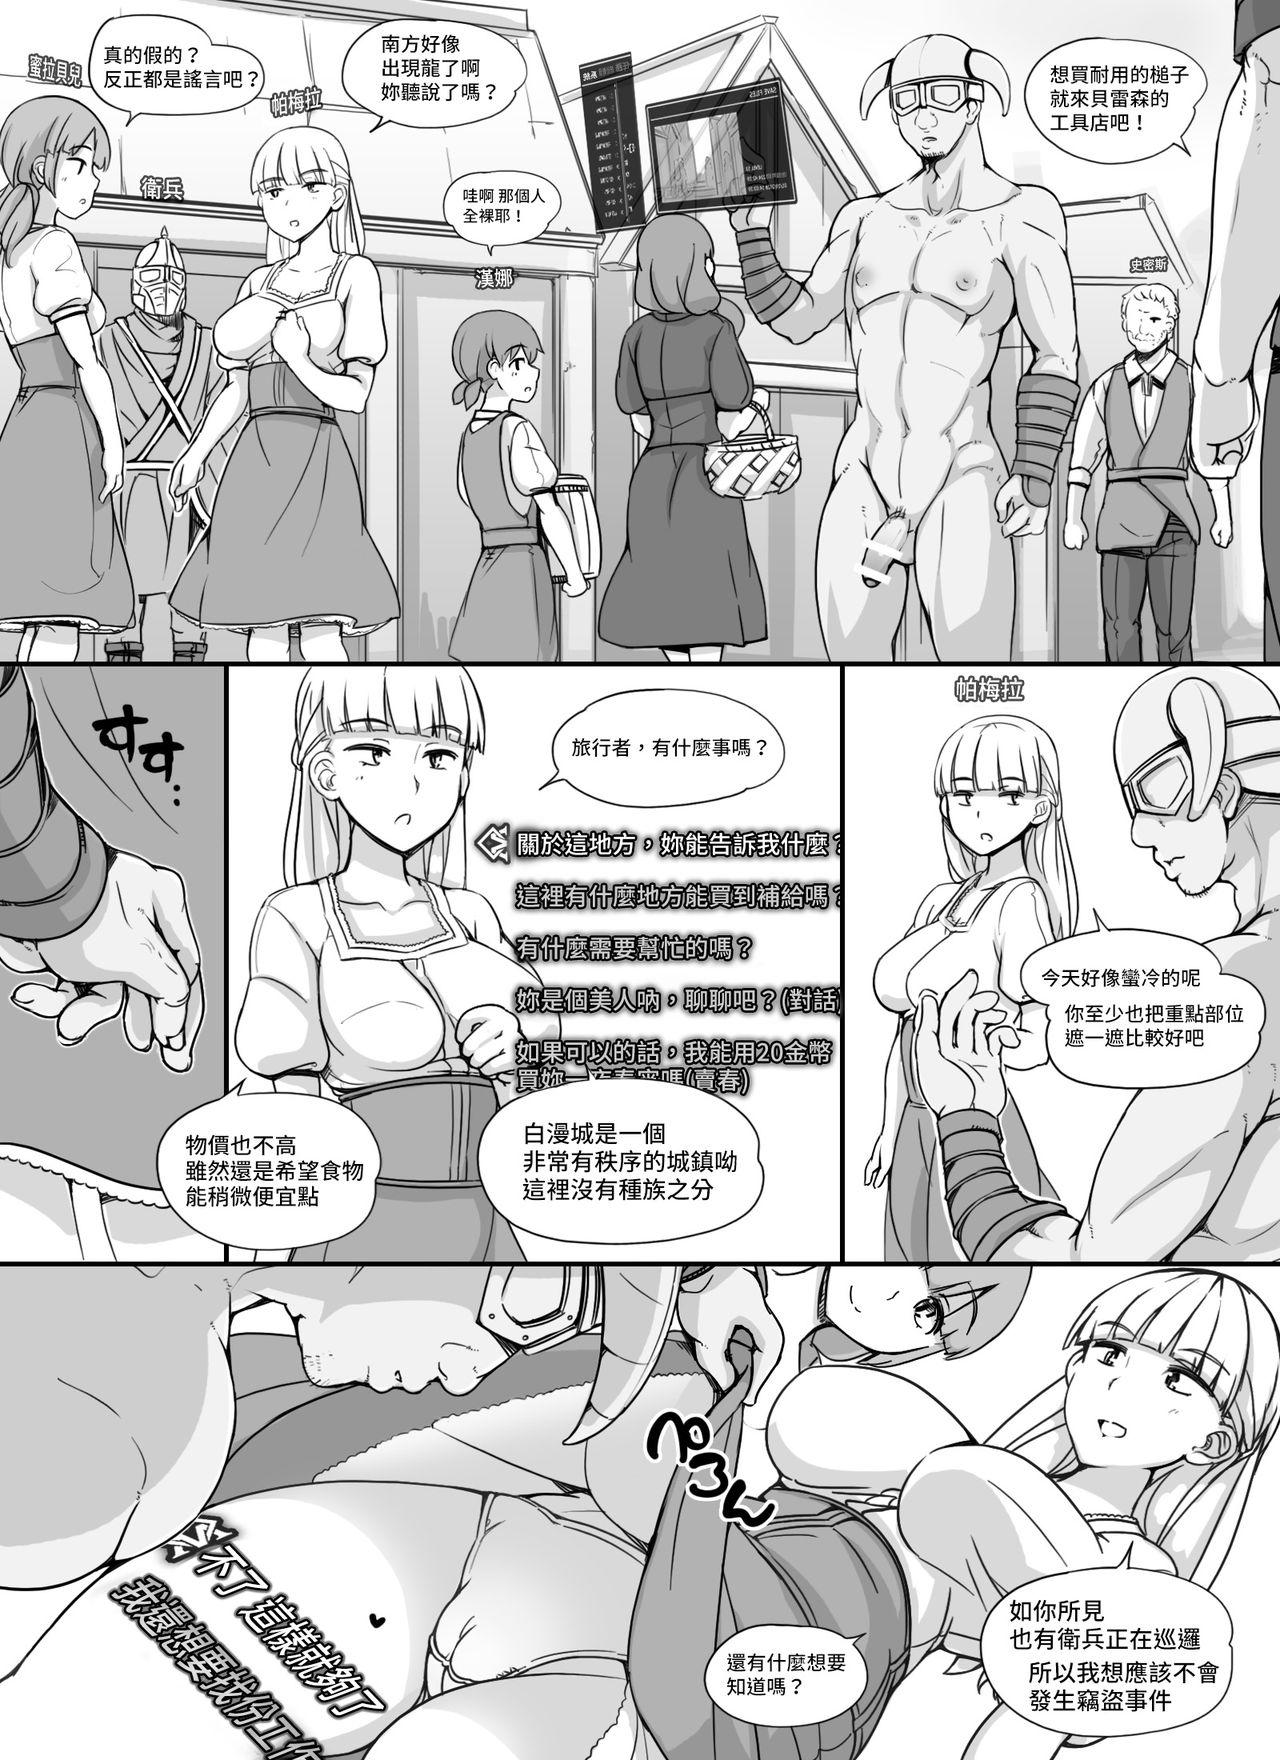 Jocks NPC Kan MOD - The elder scrolls Female - Page 5